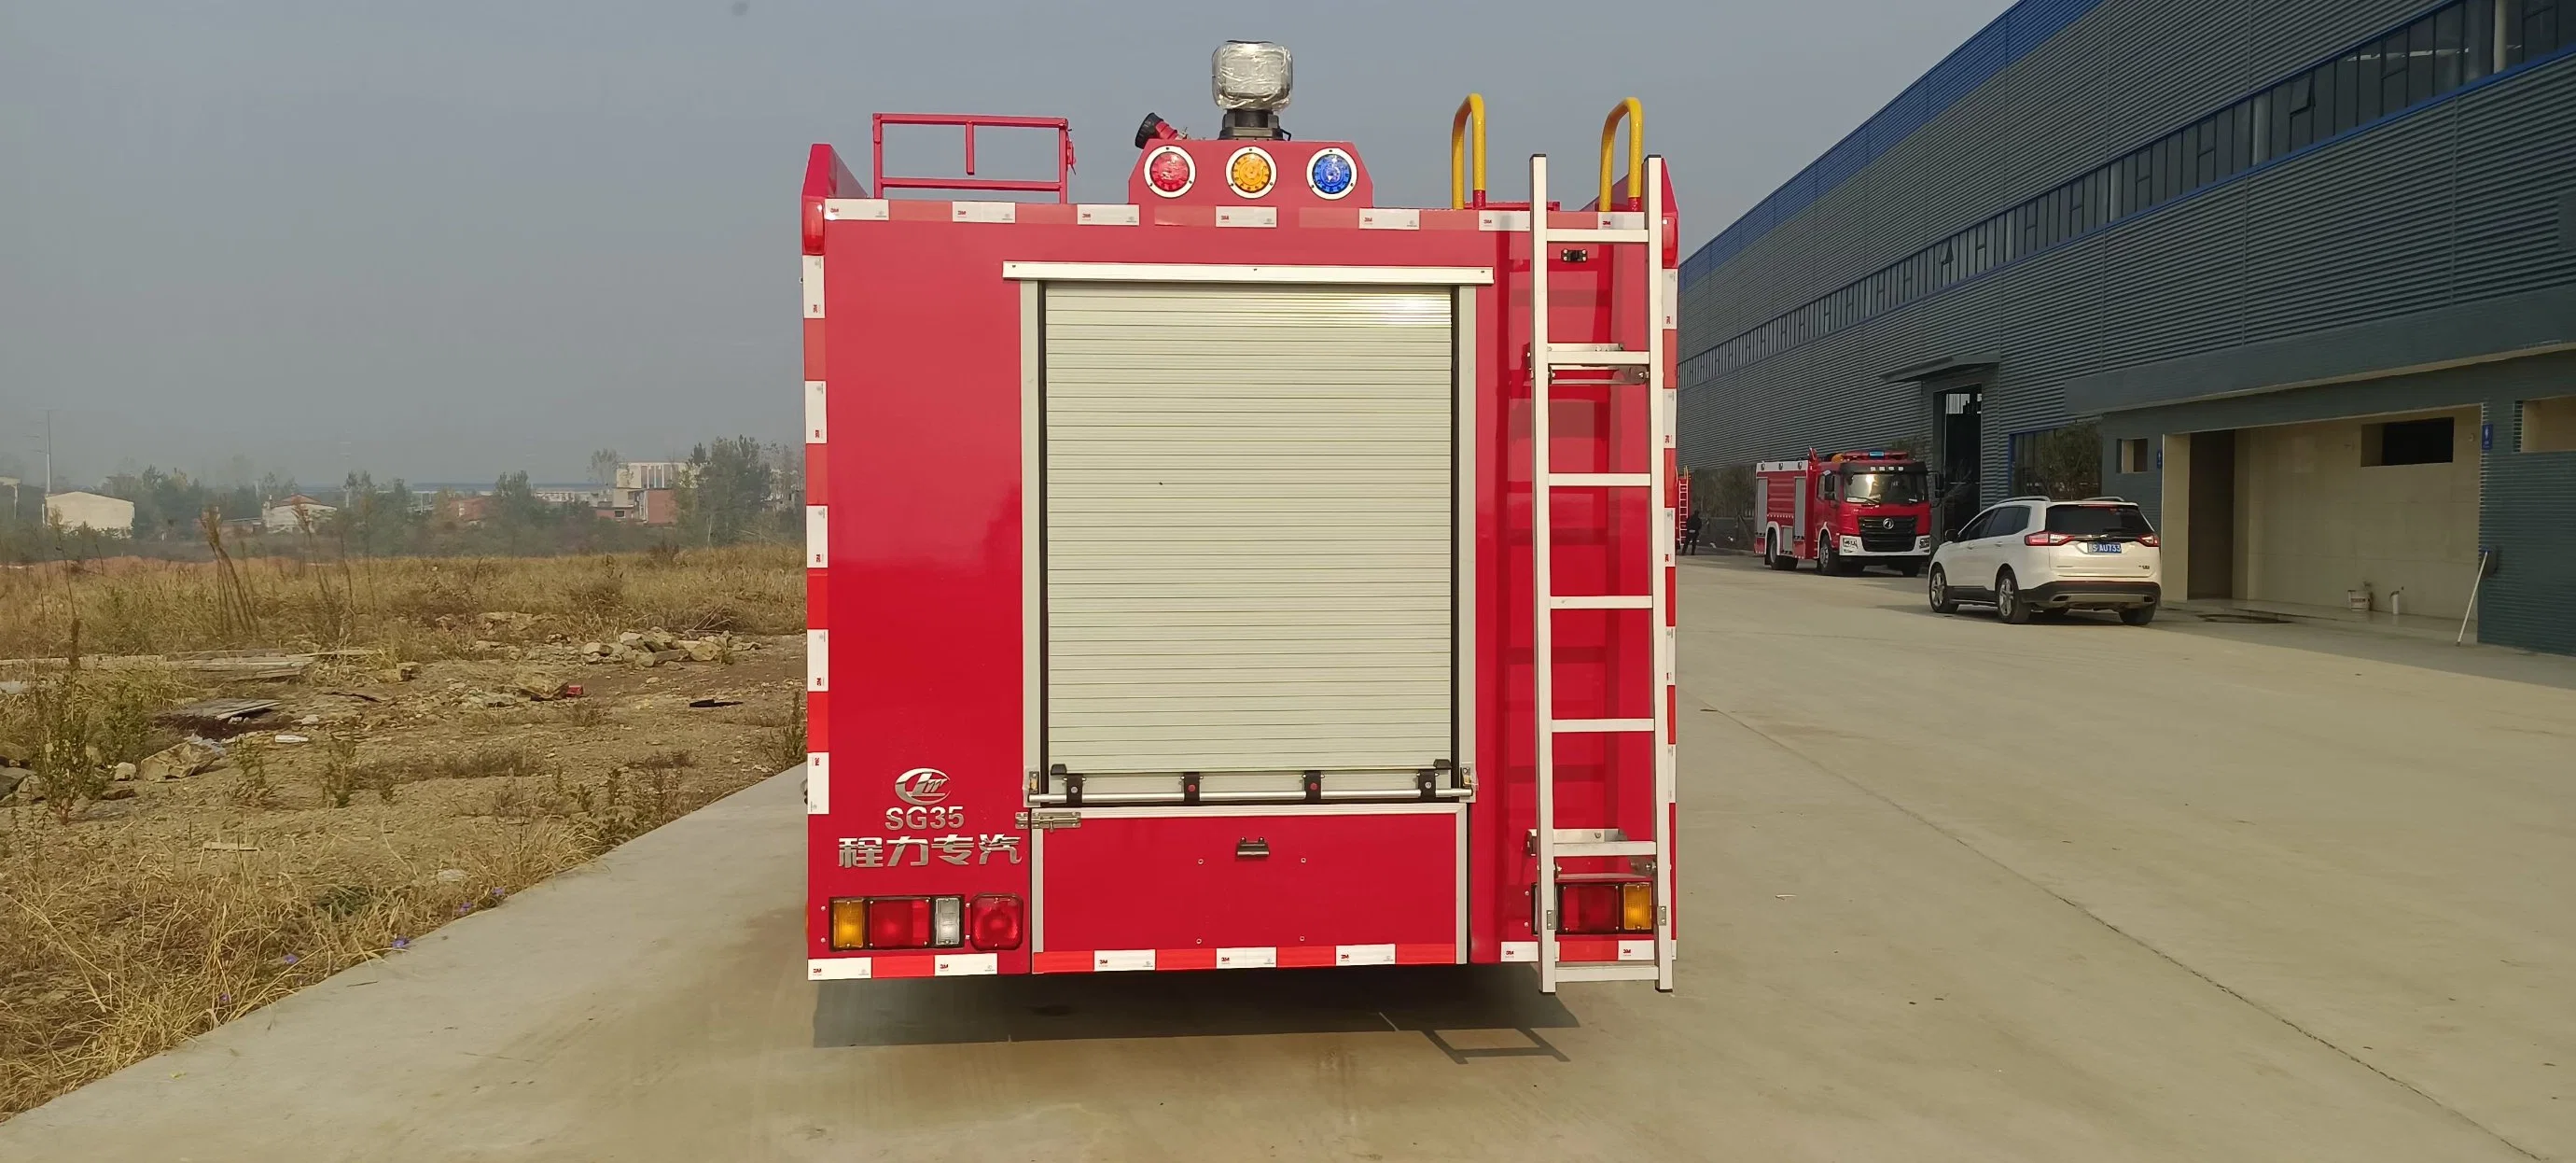 Japen Brand Schaum und Wasserbehälter Feuerwehr Truck 5000L 8000L Feuerwehrausrüstung Spezialfahrzeug mit guter Qualität